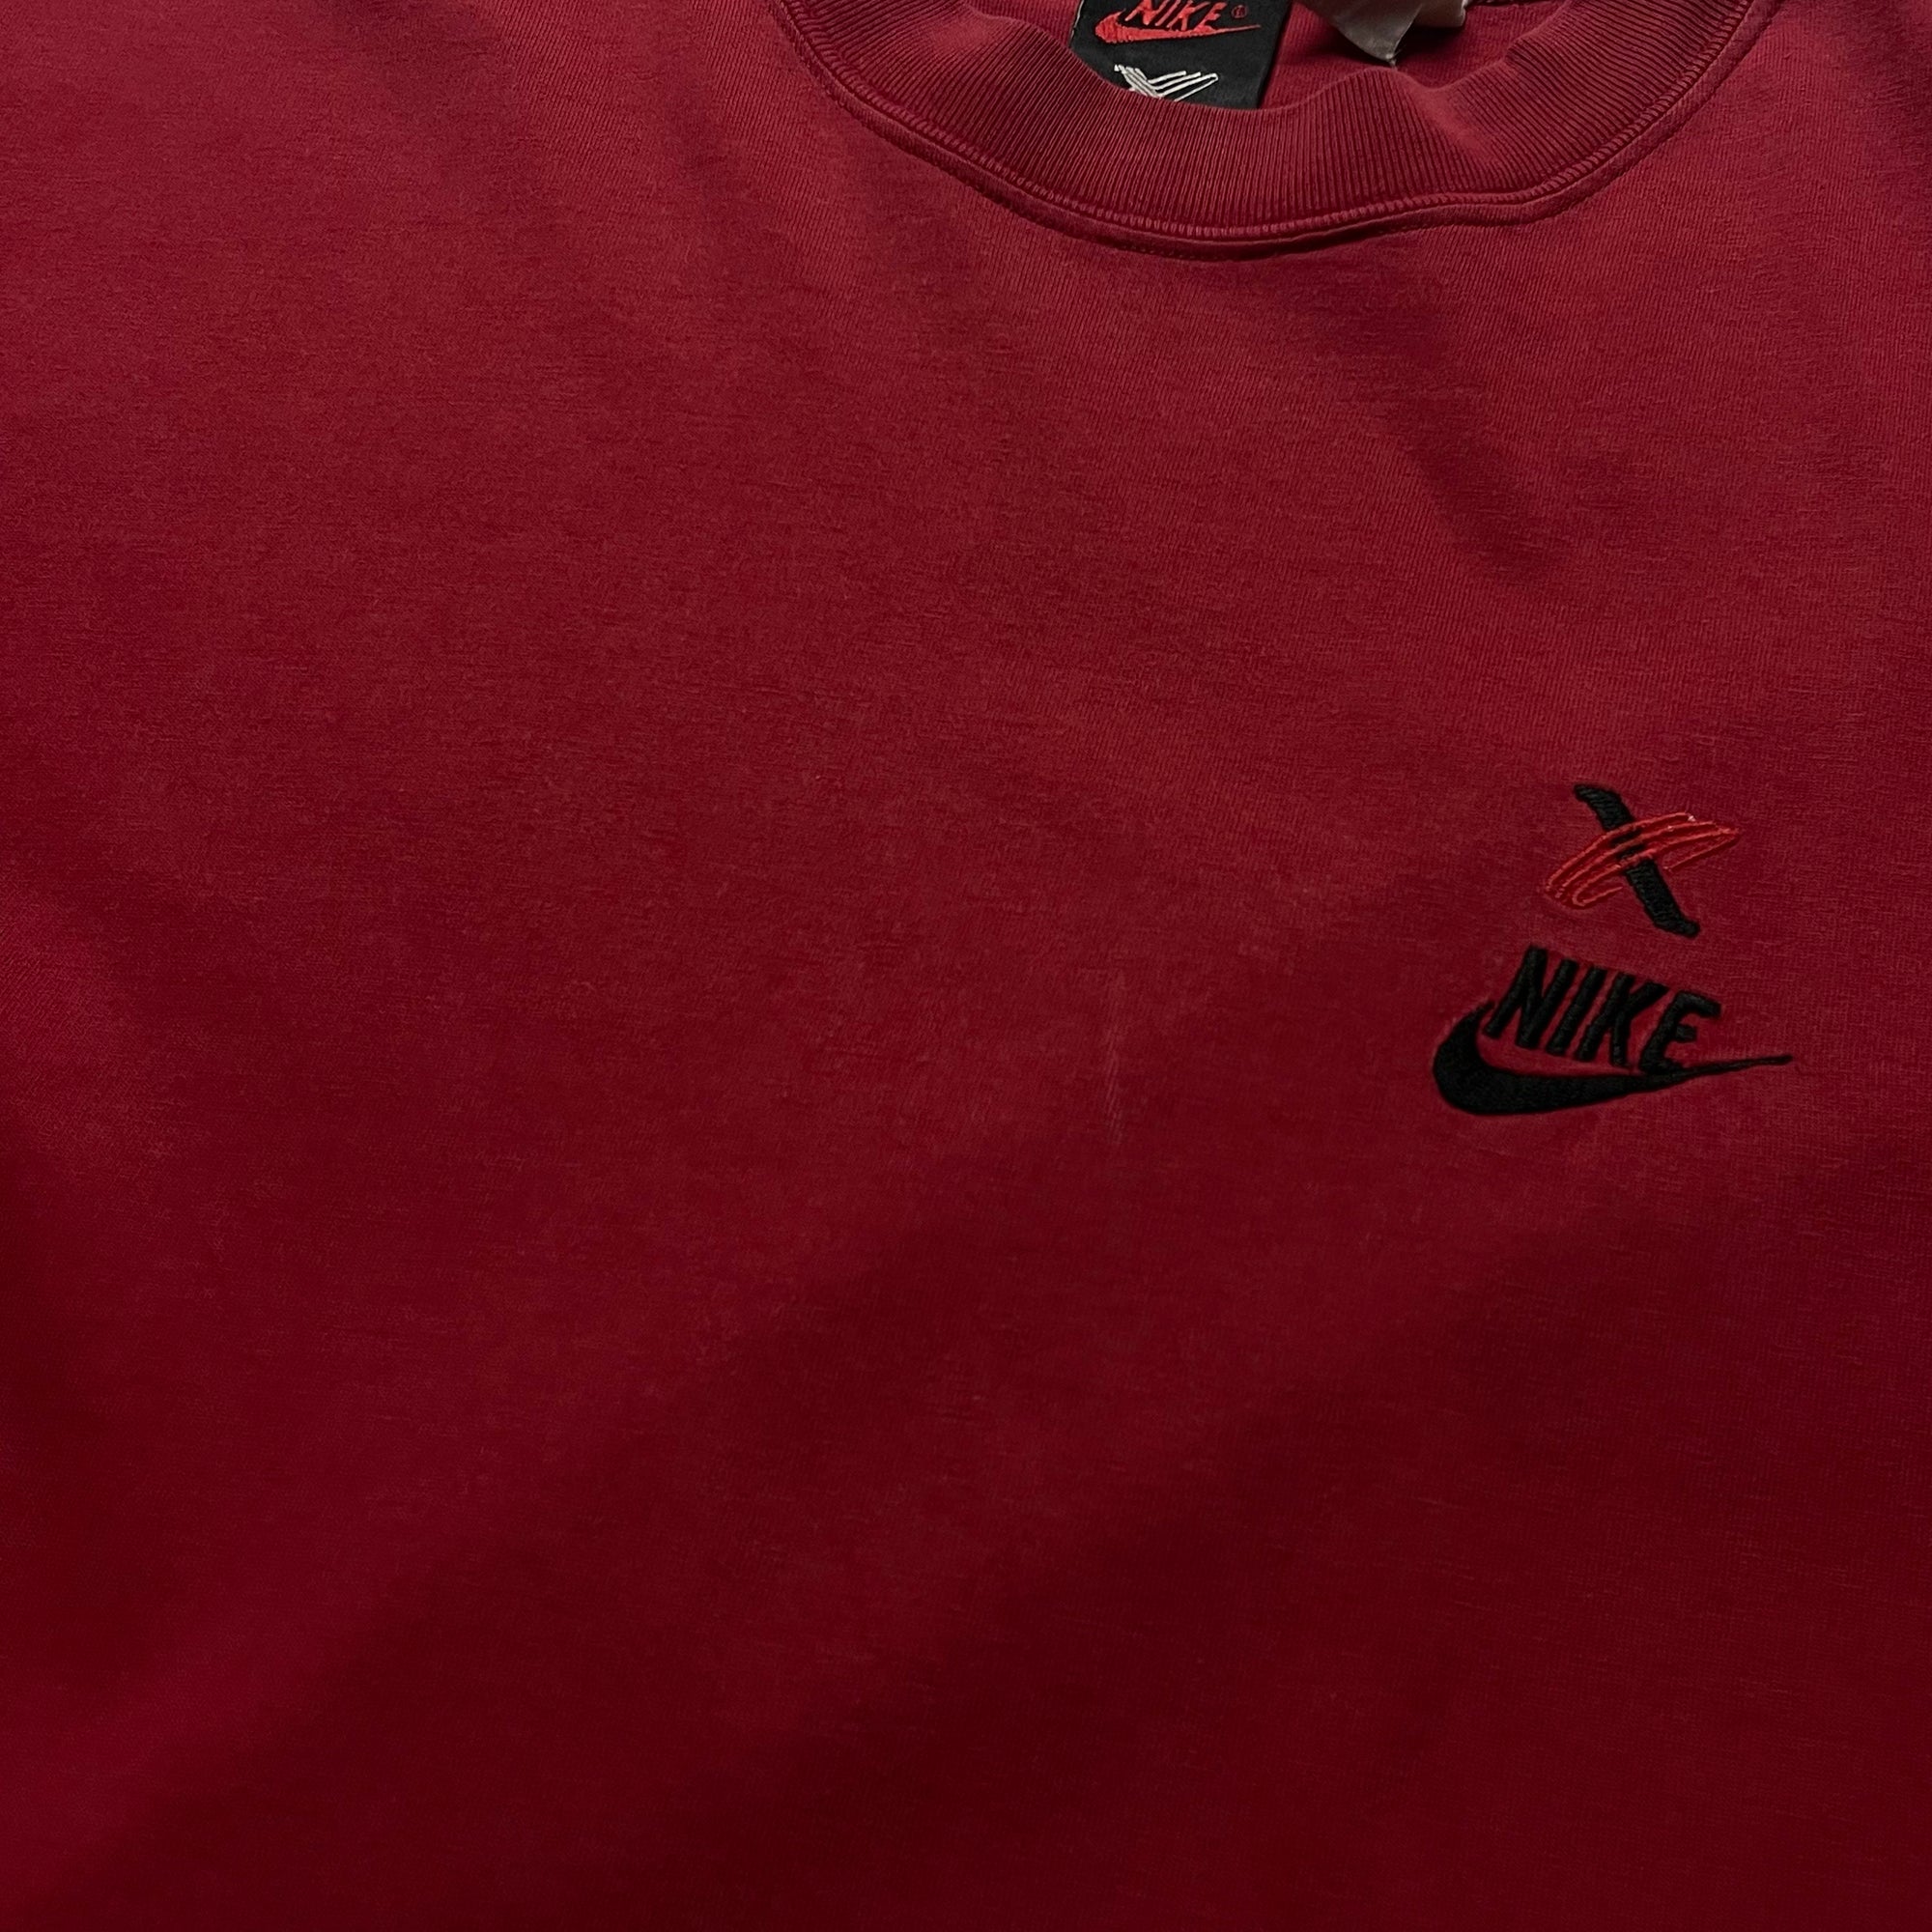 T-shirt - Nike Cross Training X - Rouge